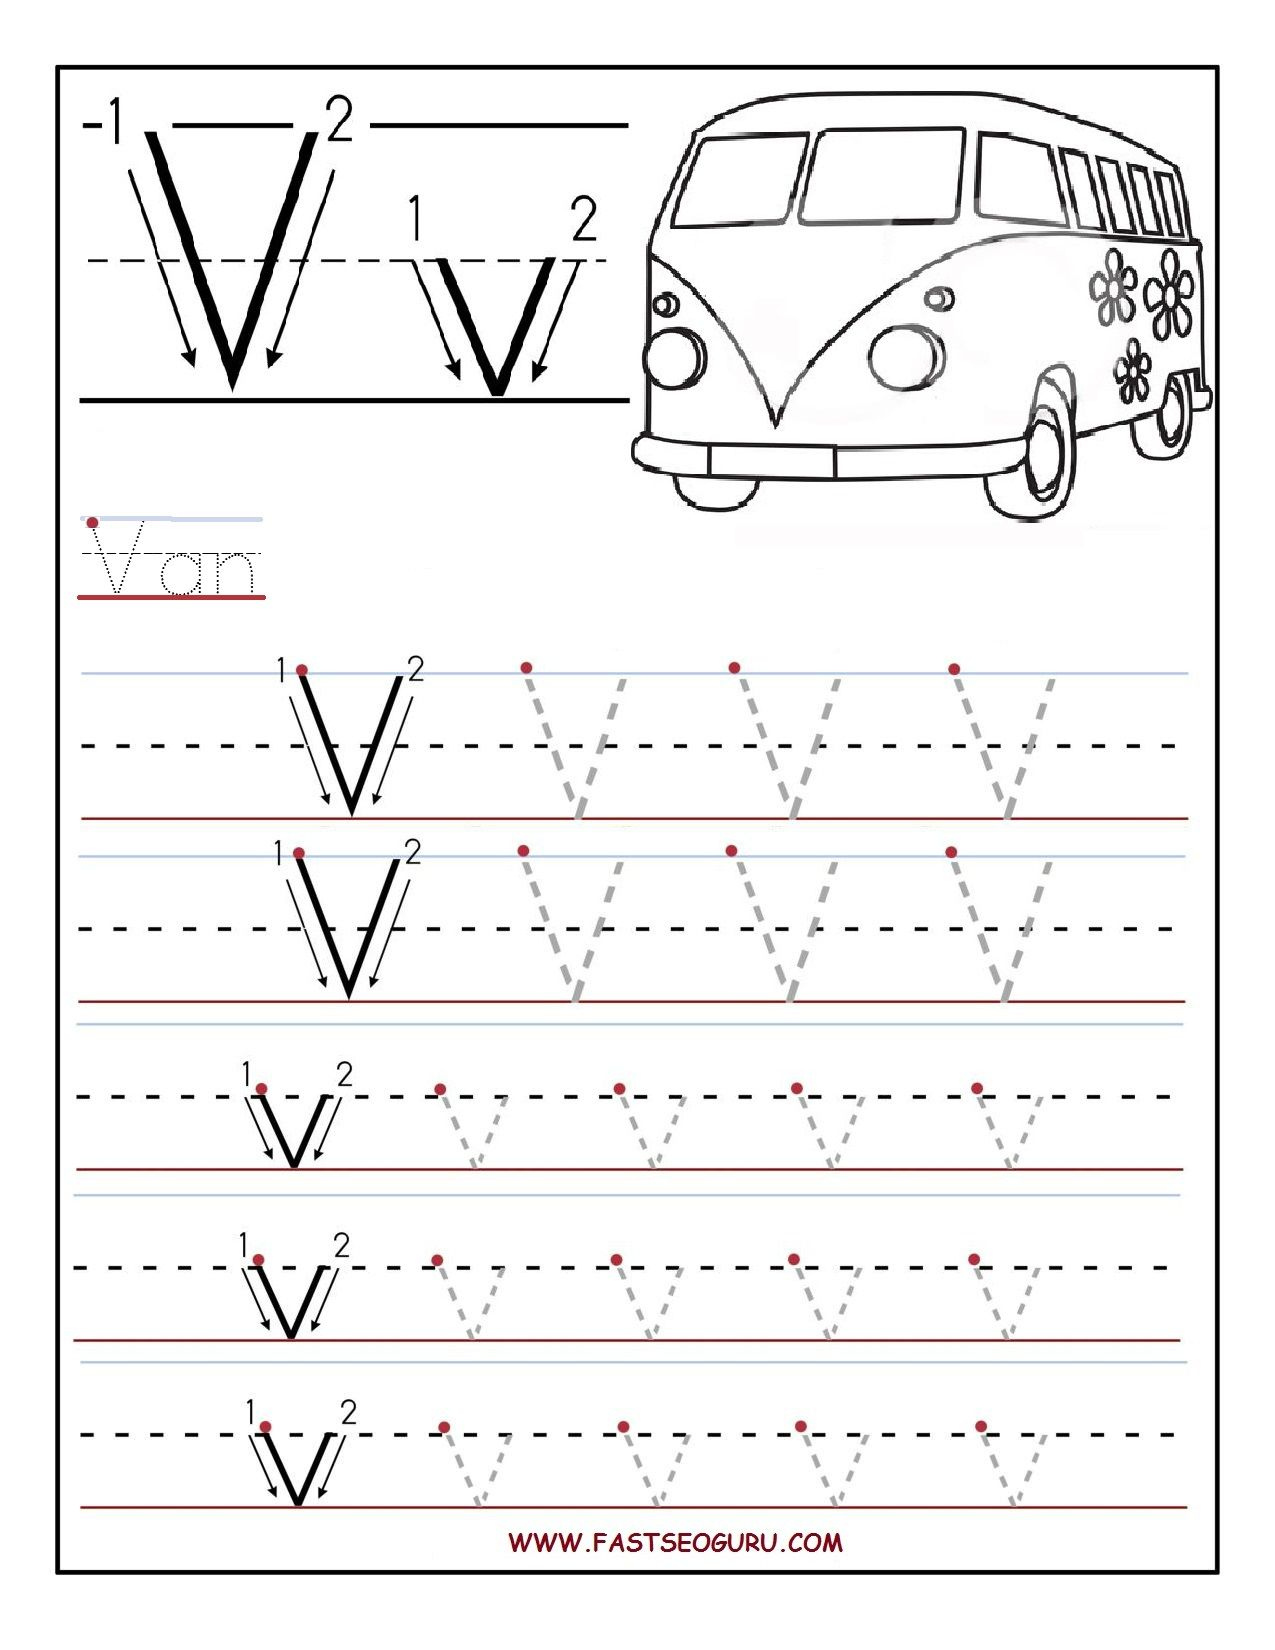 Printable Letter V Tracing Worksheets For Preschool Letter V 